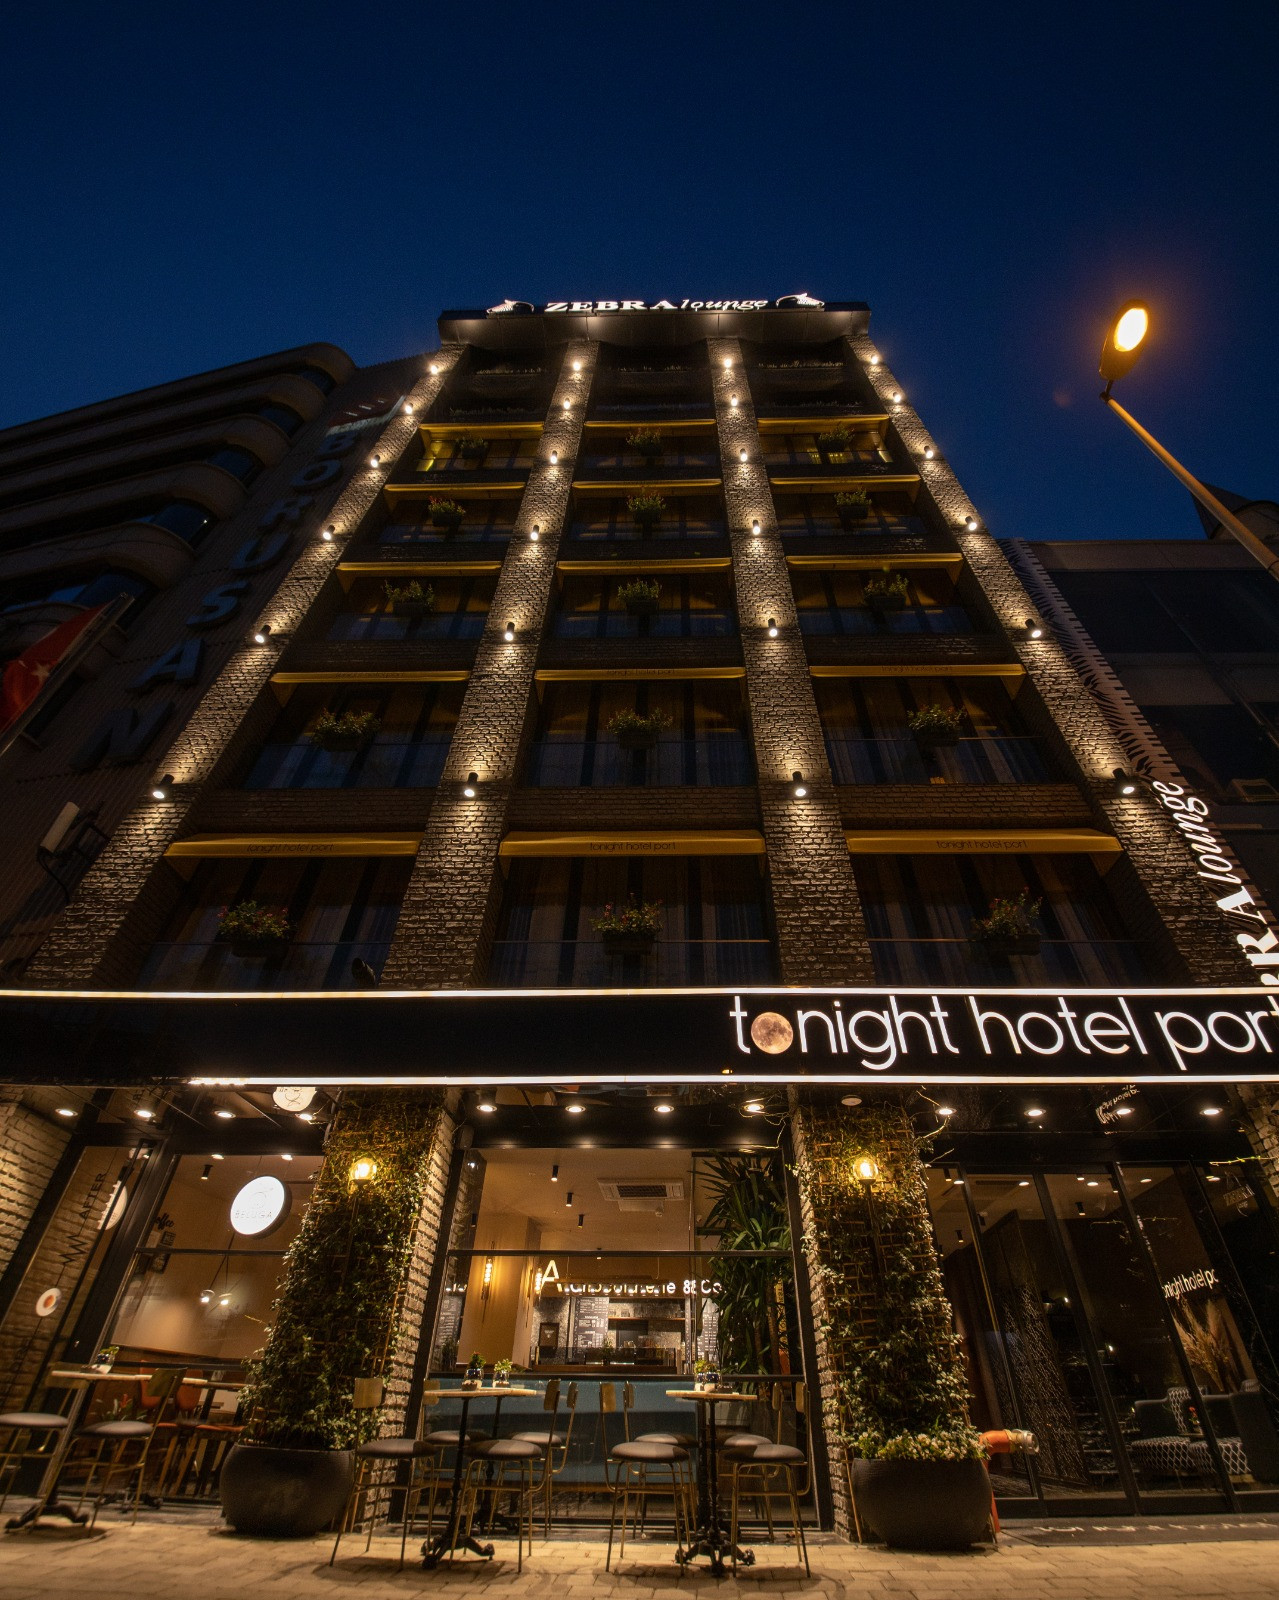 Karaköy'de yeni bir lezzet noktası: Zebra Lounge Tonight Hotel Port'ta - Resim: 1